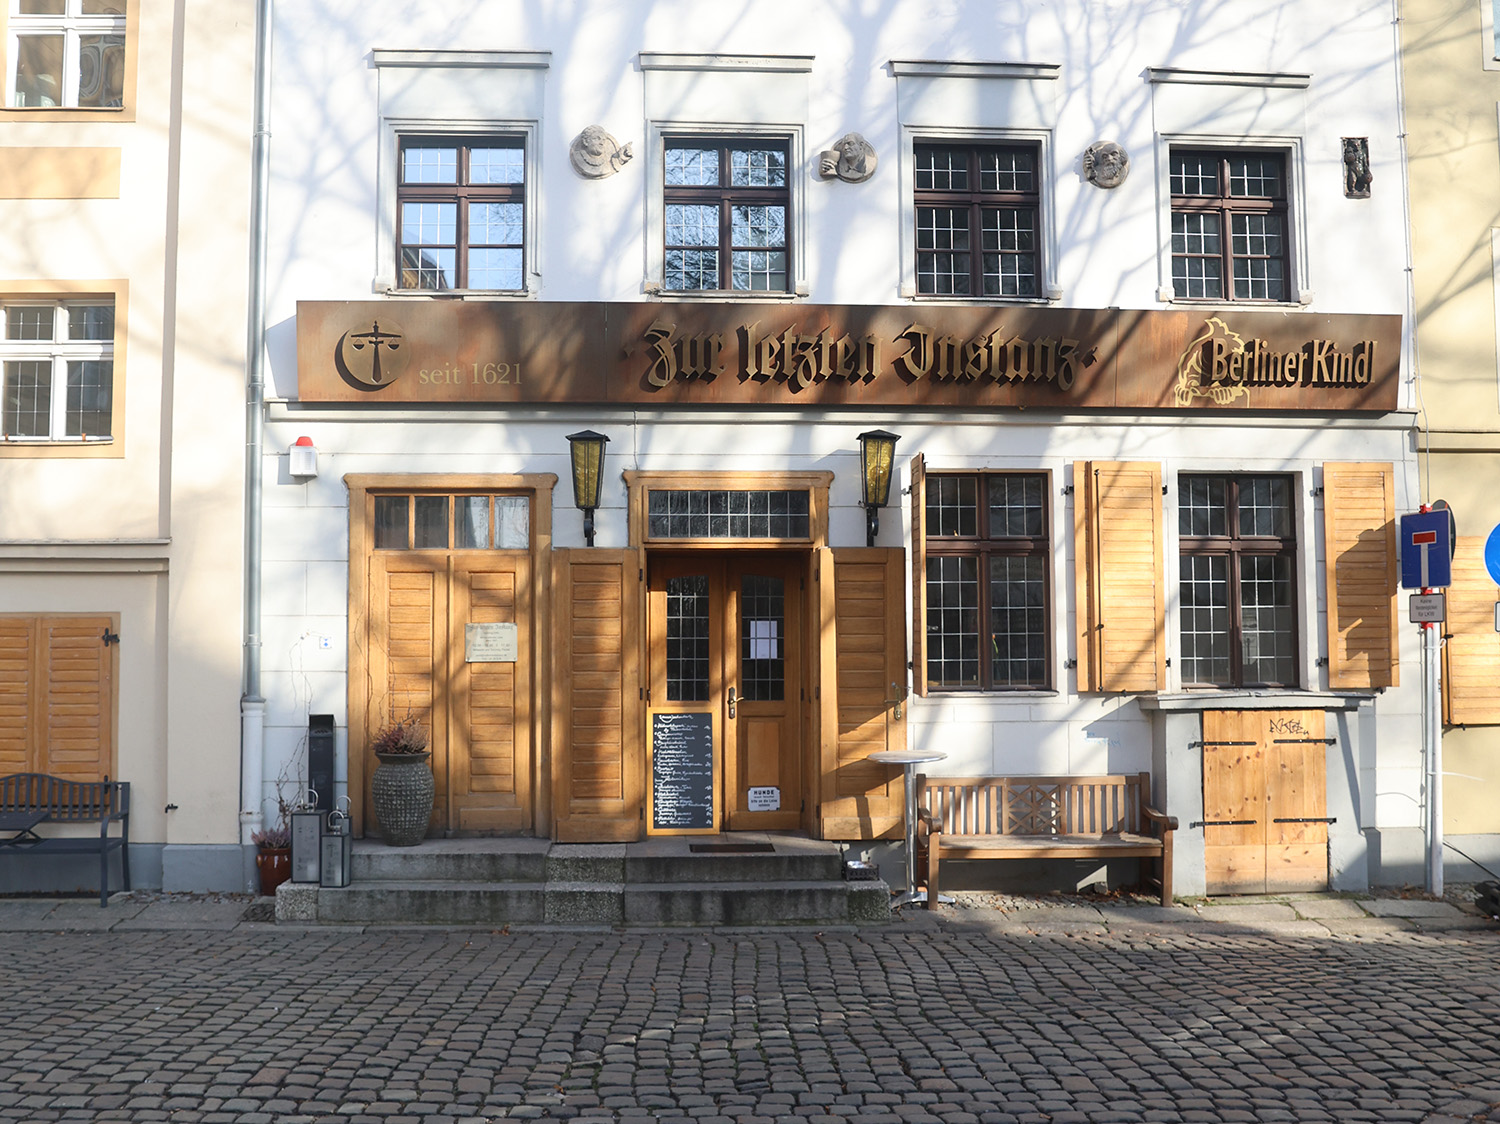 Zur letzten Instanz ist das älteste und vor allem ein einzigartiges Restaurant in Berlin Mitte.